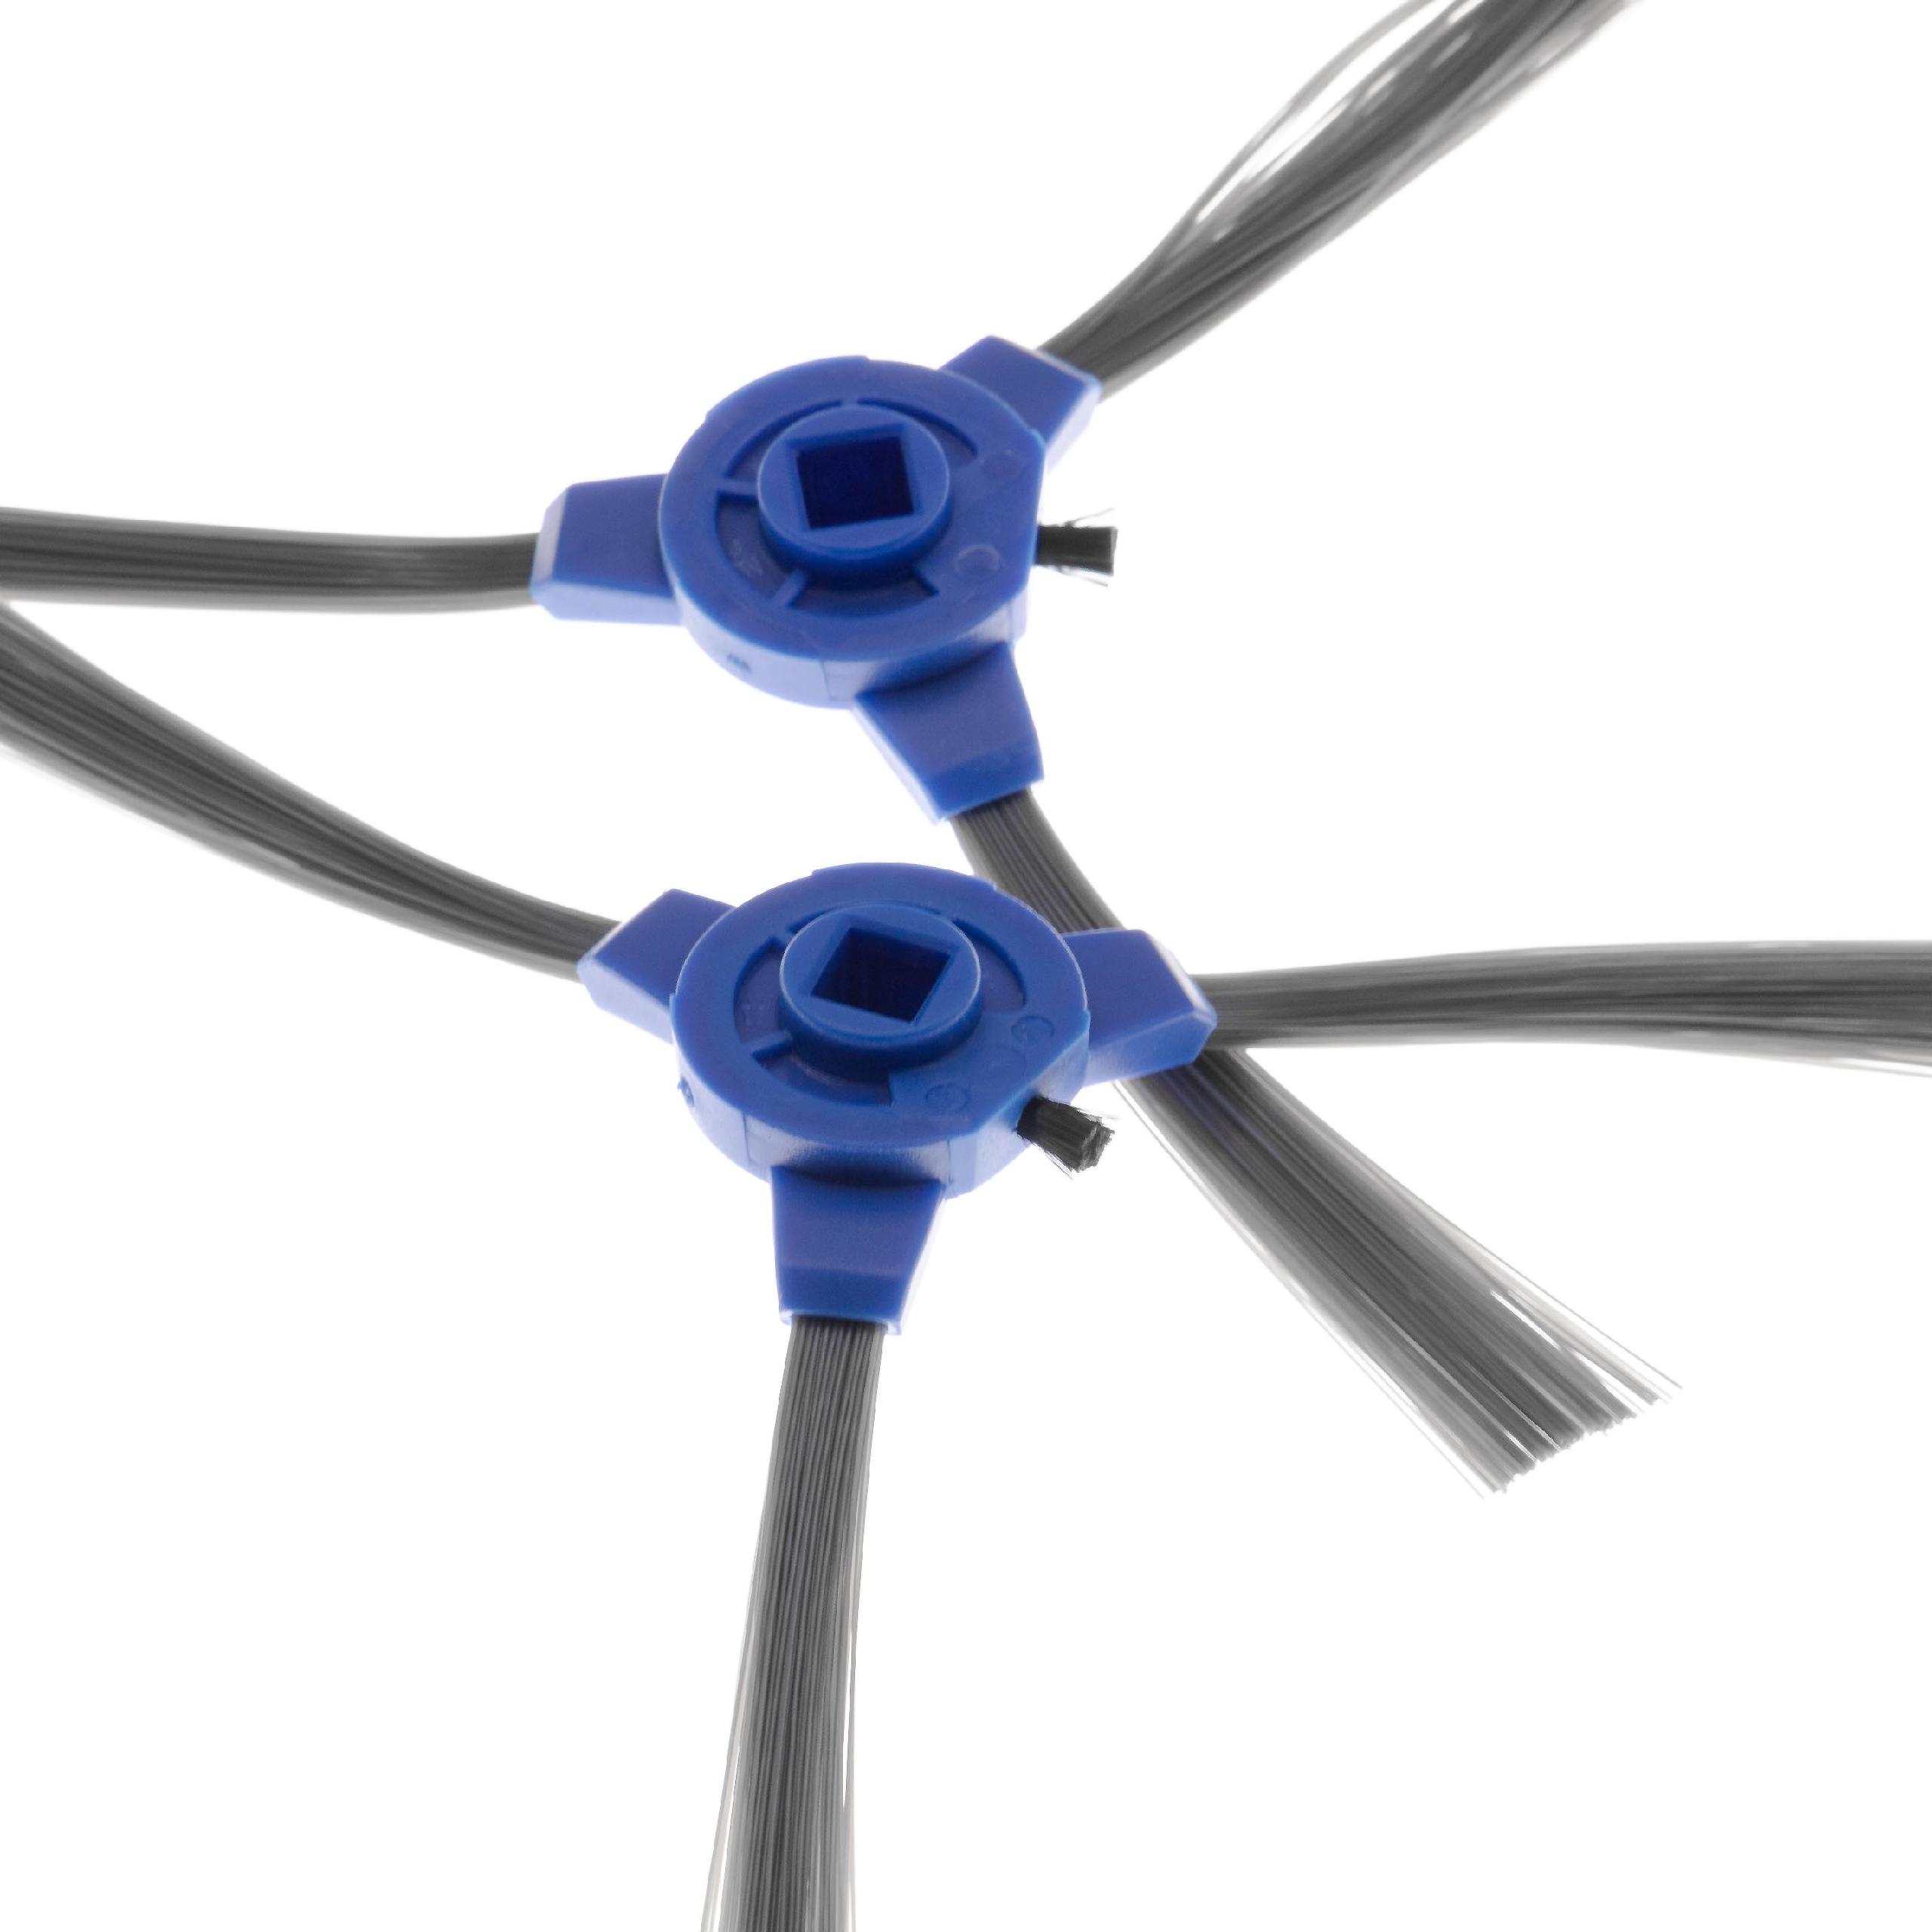 2x Cepillo lateral 3 brazos para robot aspirador Eufy, Tesvor 11S - Set de cepillos negro / gris / azul